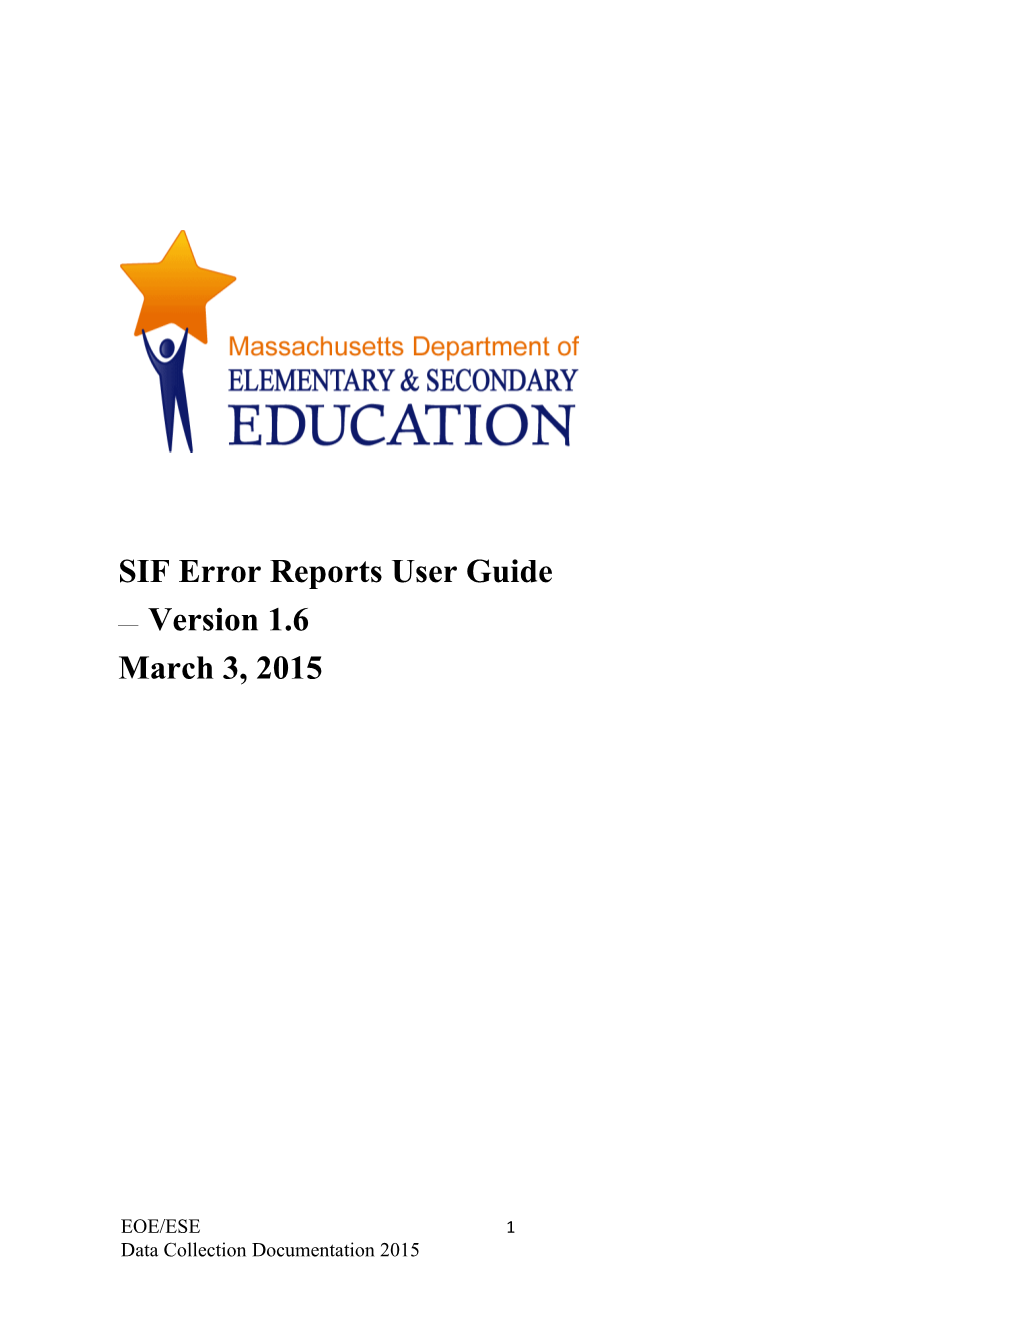 SIF Error Reports User Guide V 1.6